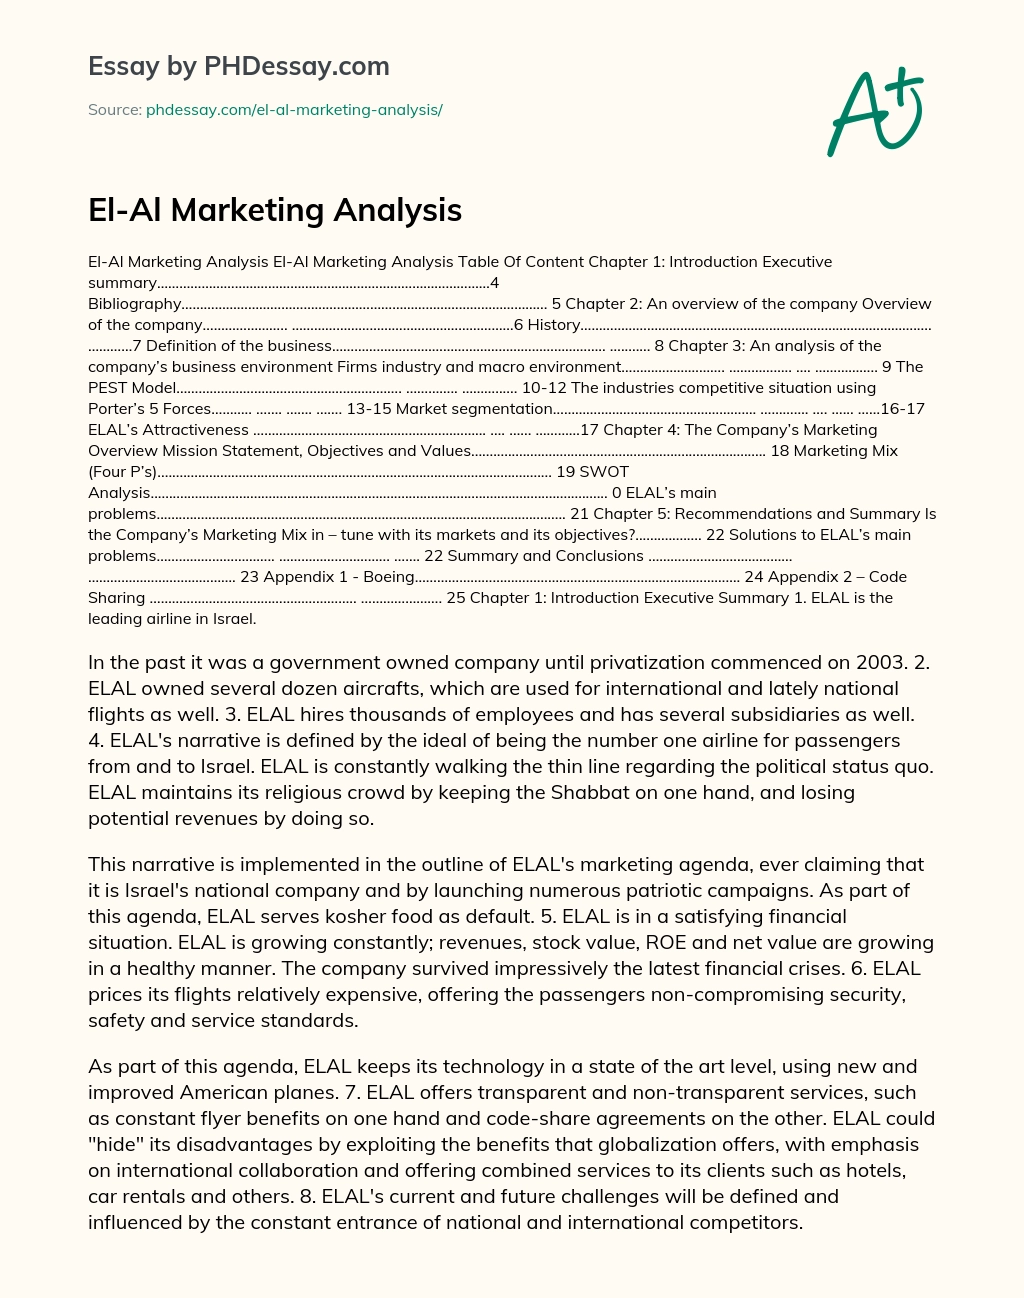 El-Al Marketing Analysis essay